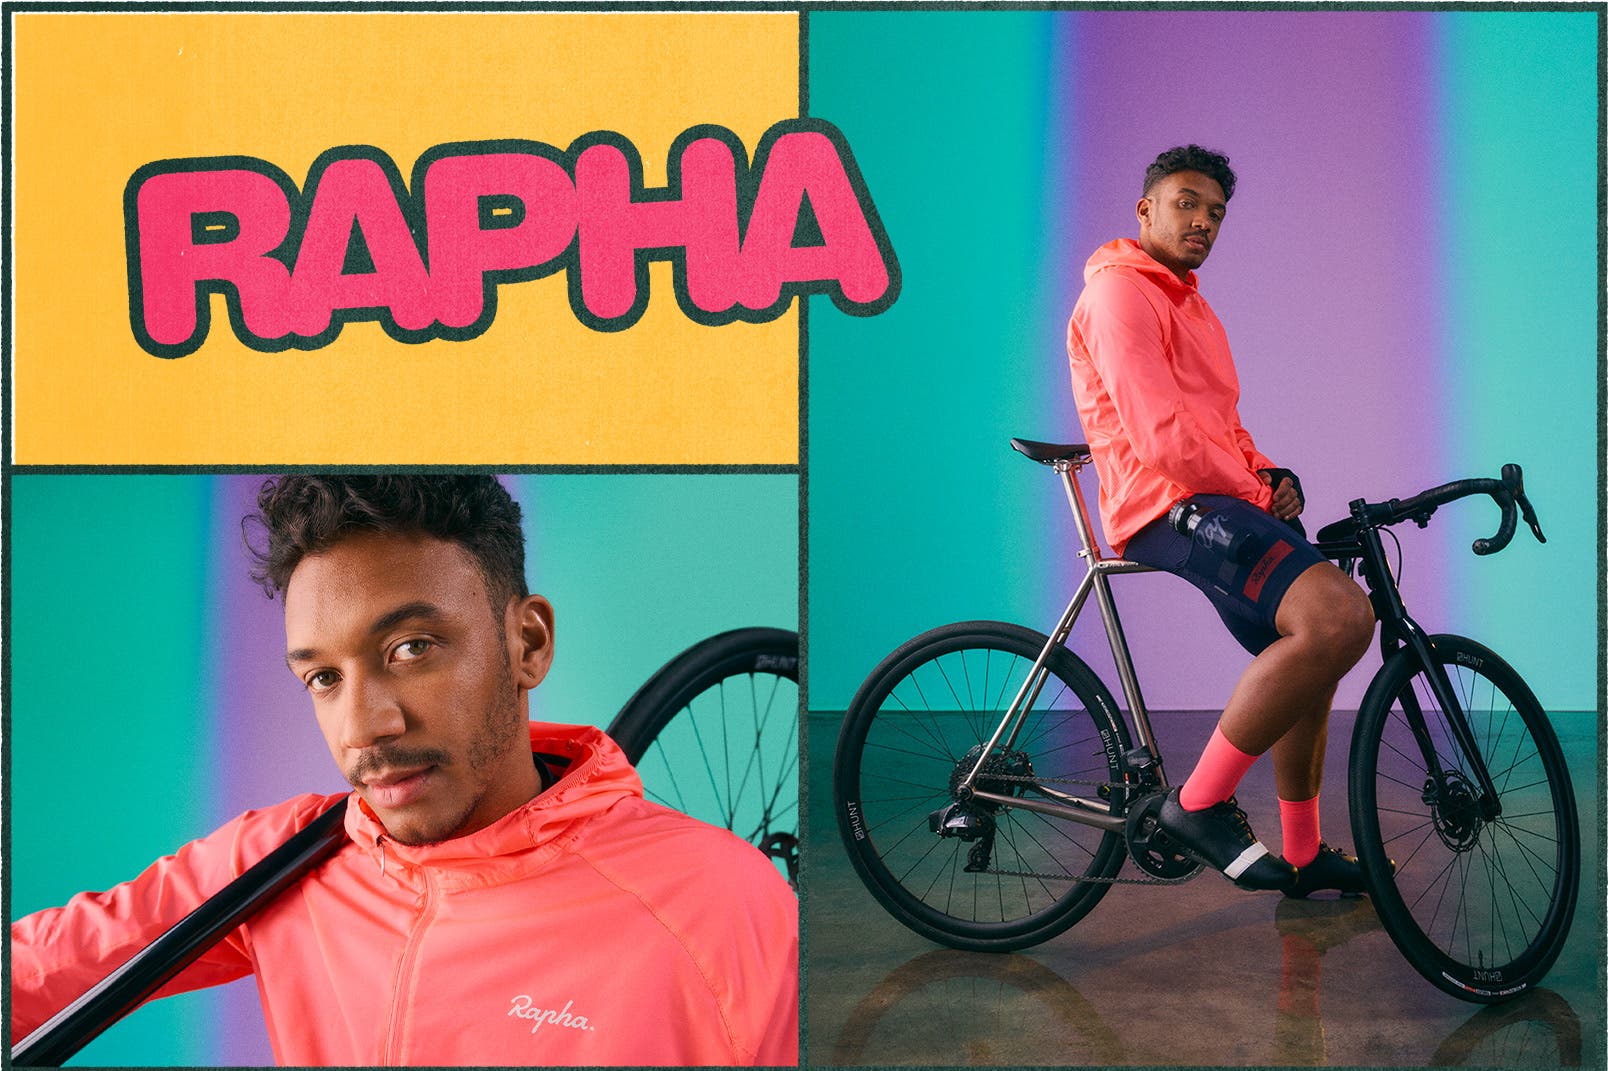 Man in Rapha cycling gear.